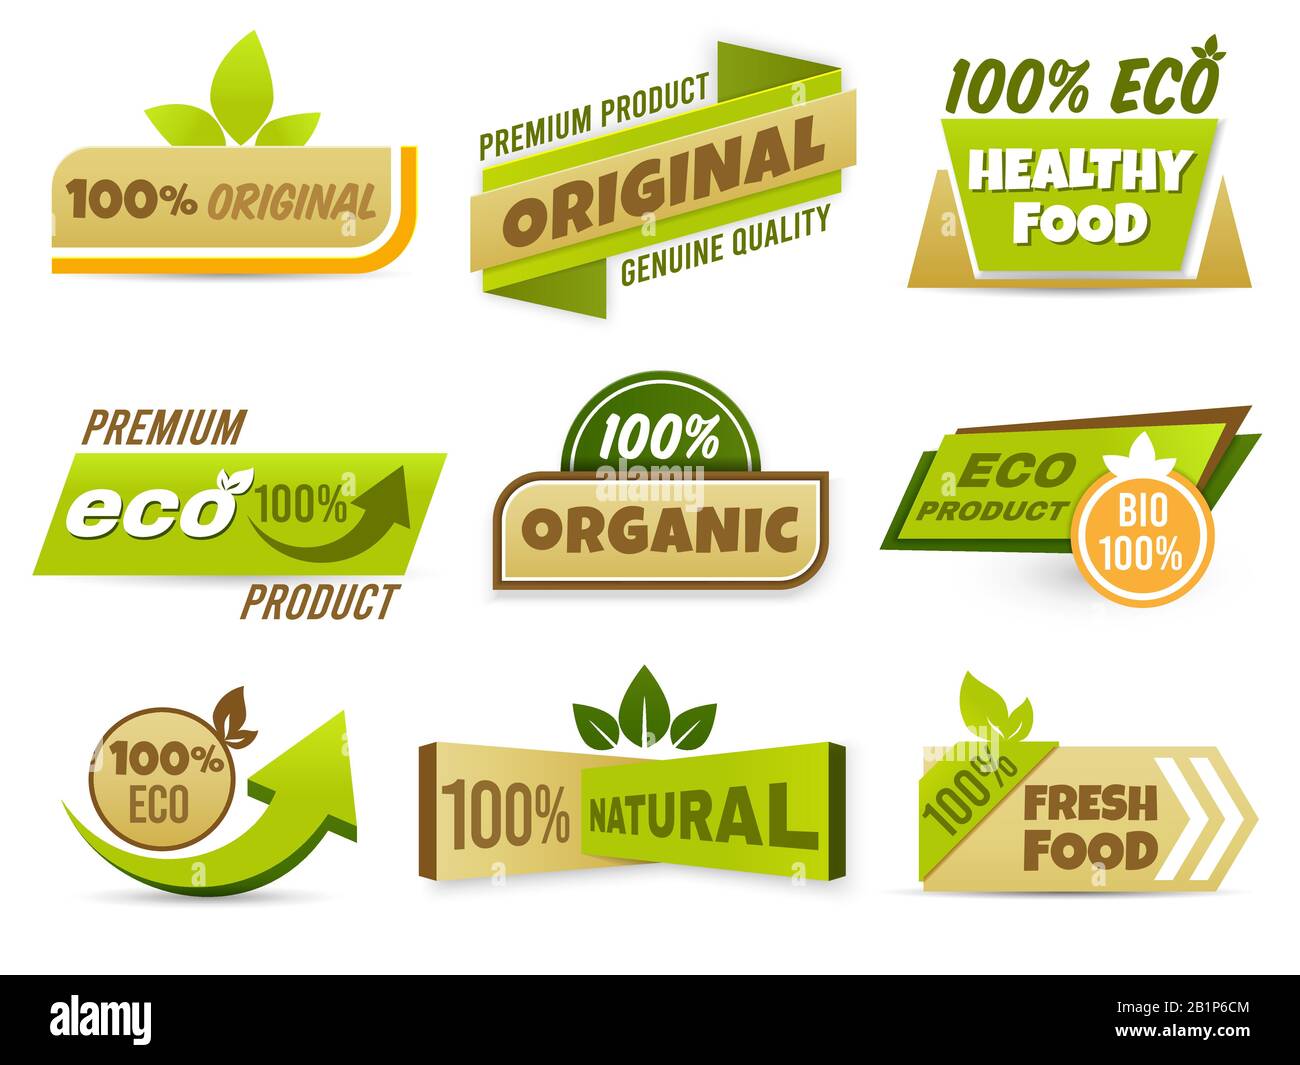 Banner etichetta Eco. Etichette per alimenti sani, bio-prodotto ecologico e set vettoriale badge con emblema organico naturale. raccolta di etichette di produzione originali al 100% Illustrazione Vettoriale